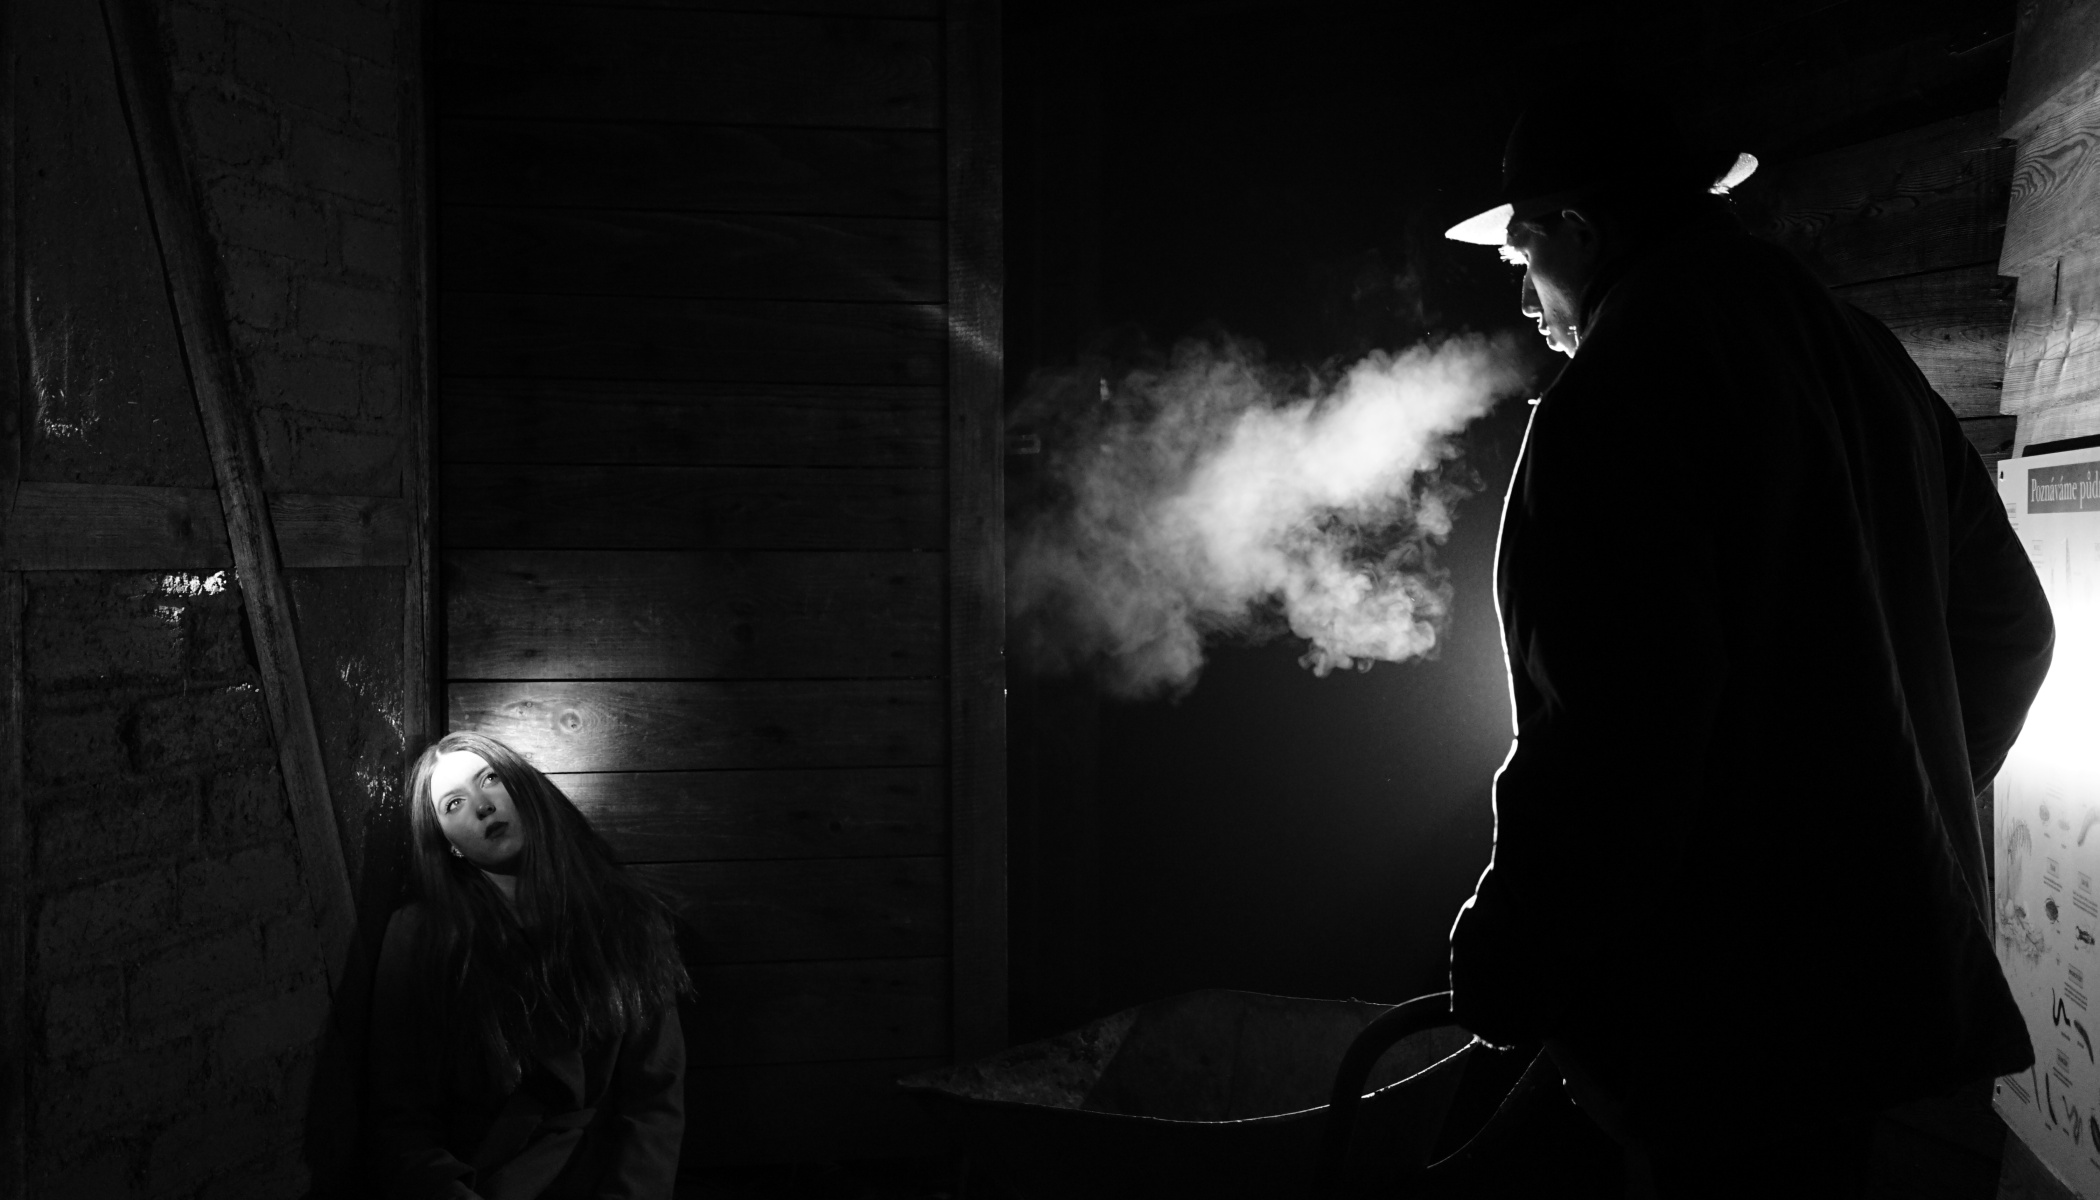 Nach Einbruch der Dunkelheit erblüht das Verbrechen - Fotografie im Film Noir Stil